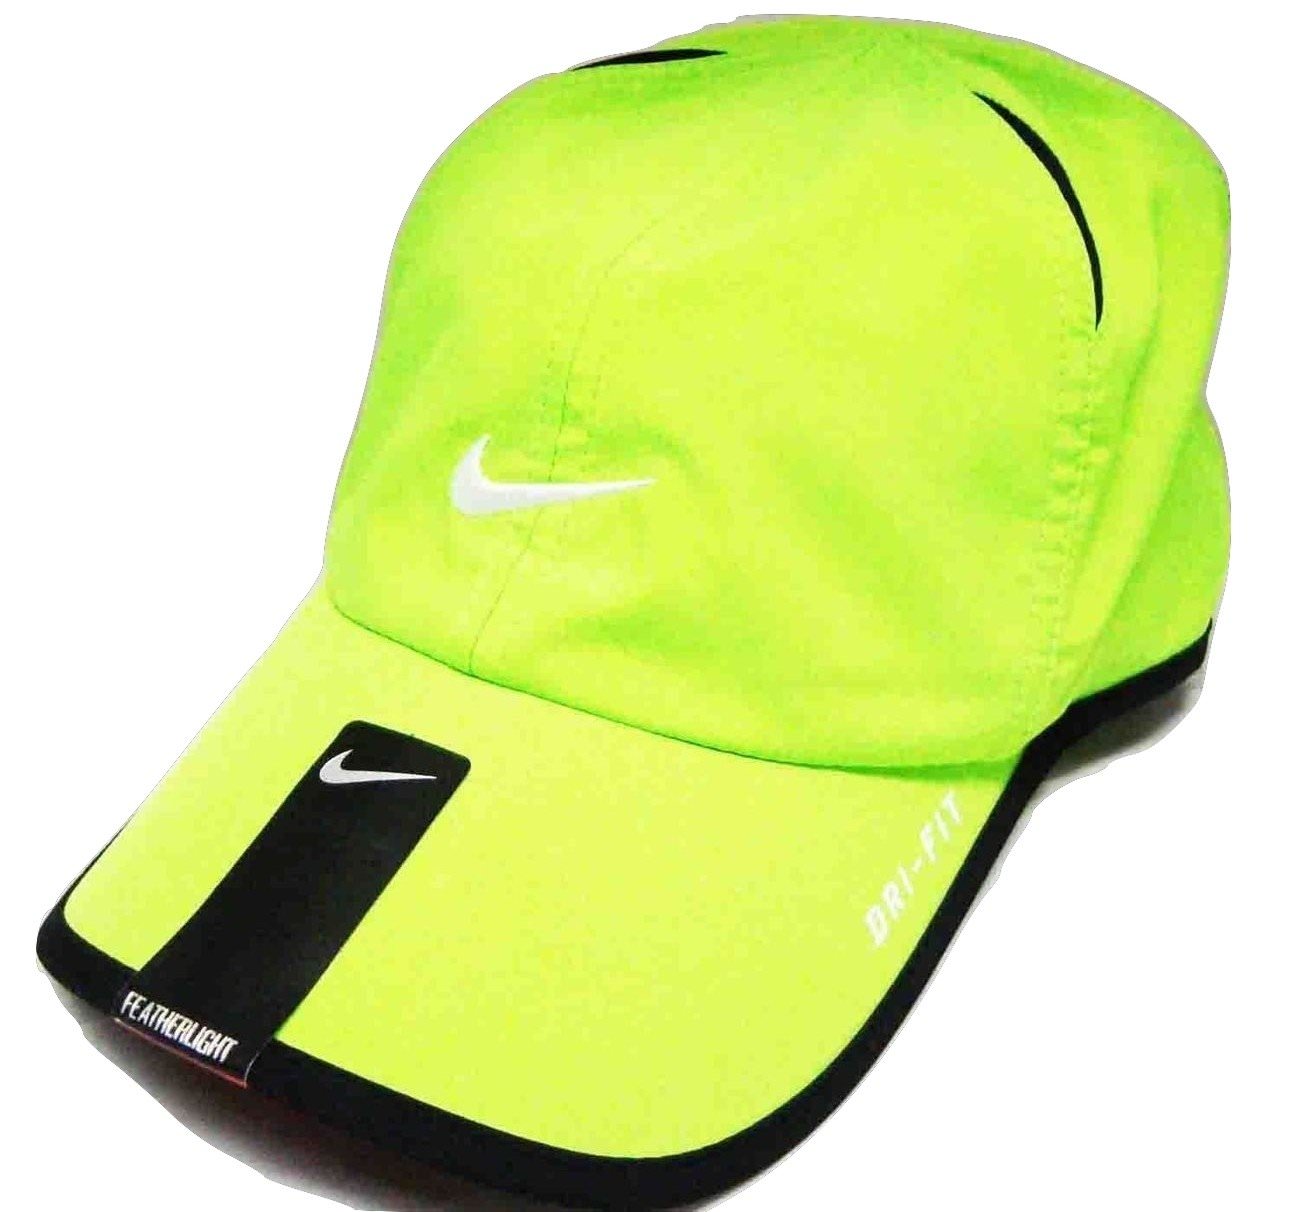 NIKE Men-Women's Tennis Hat Golf DRI-FIT Runner Cap Featherlight, Volt ...